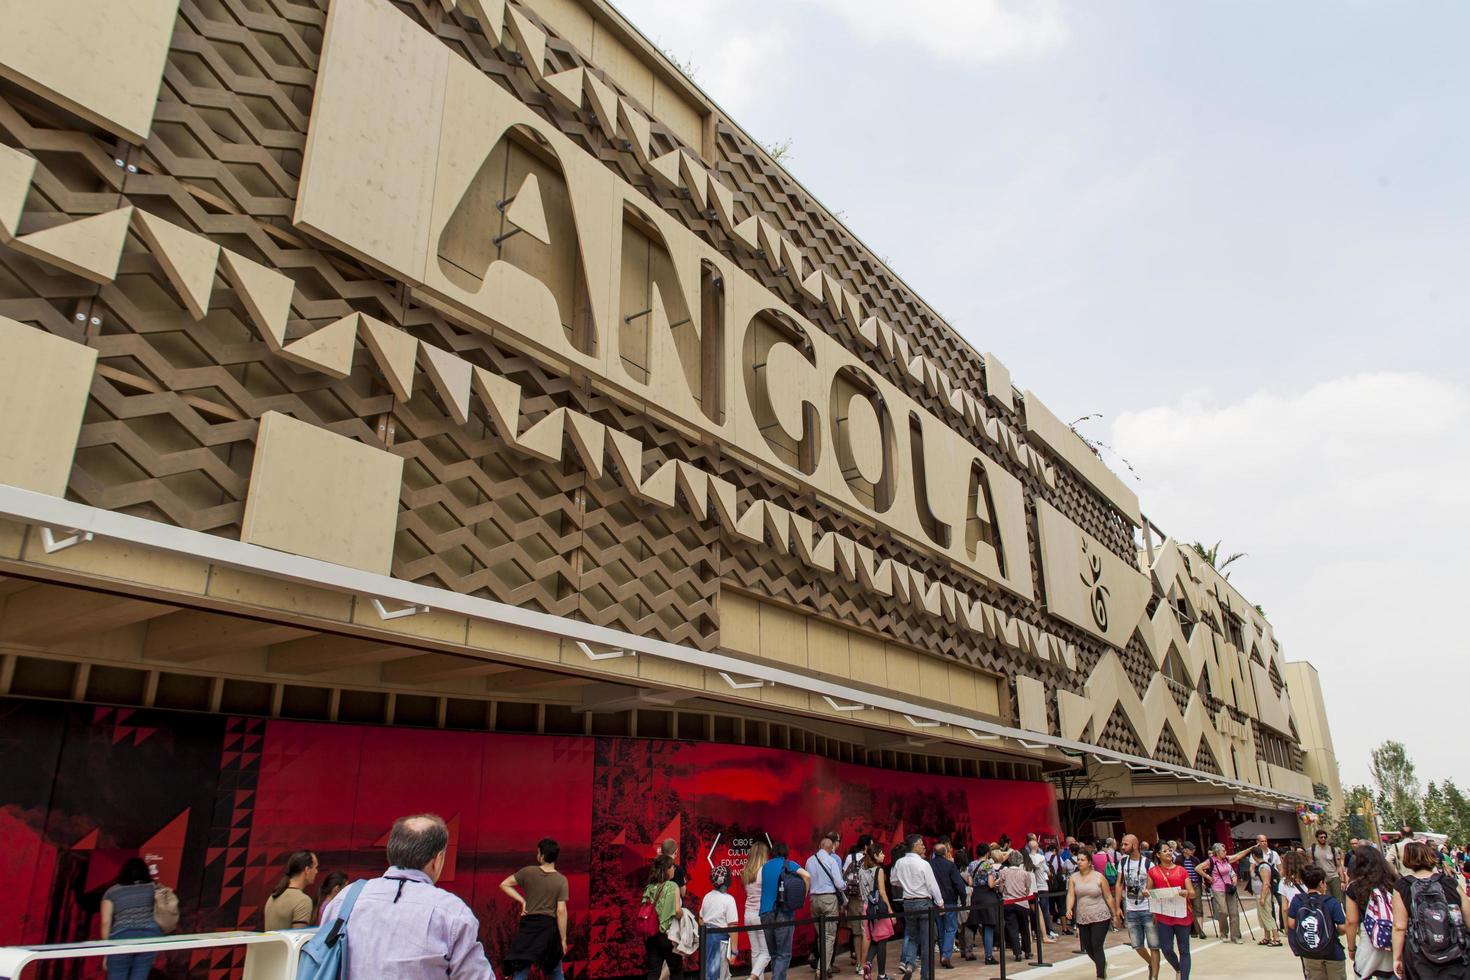 Milano, Italien, 1 juni 2015 - Oidentifierade personer vid Angola -paviljongen vid mässan 2015 i Milano, Italien. expo 2015 ägde rum från 1 maj till 31 oktober 2015. foto